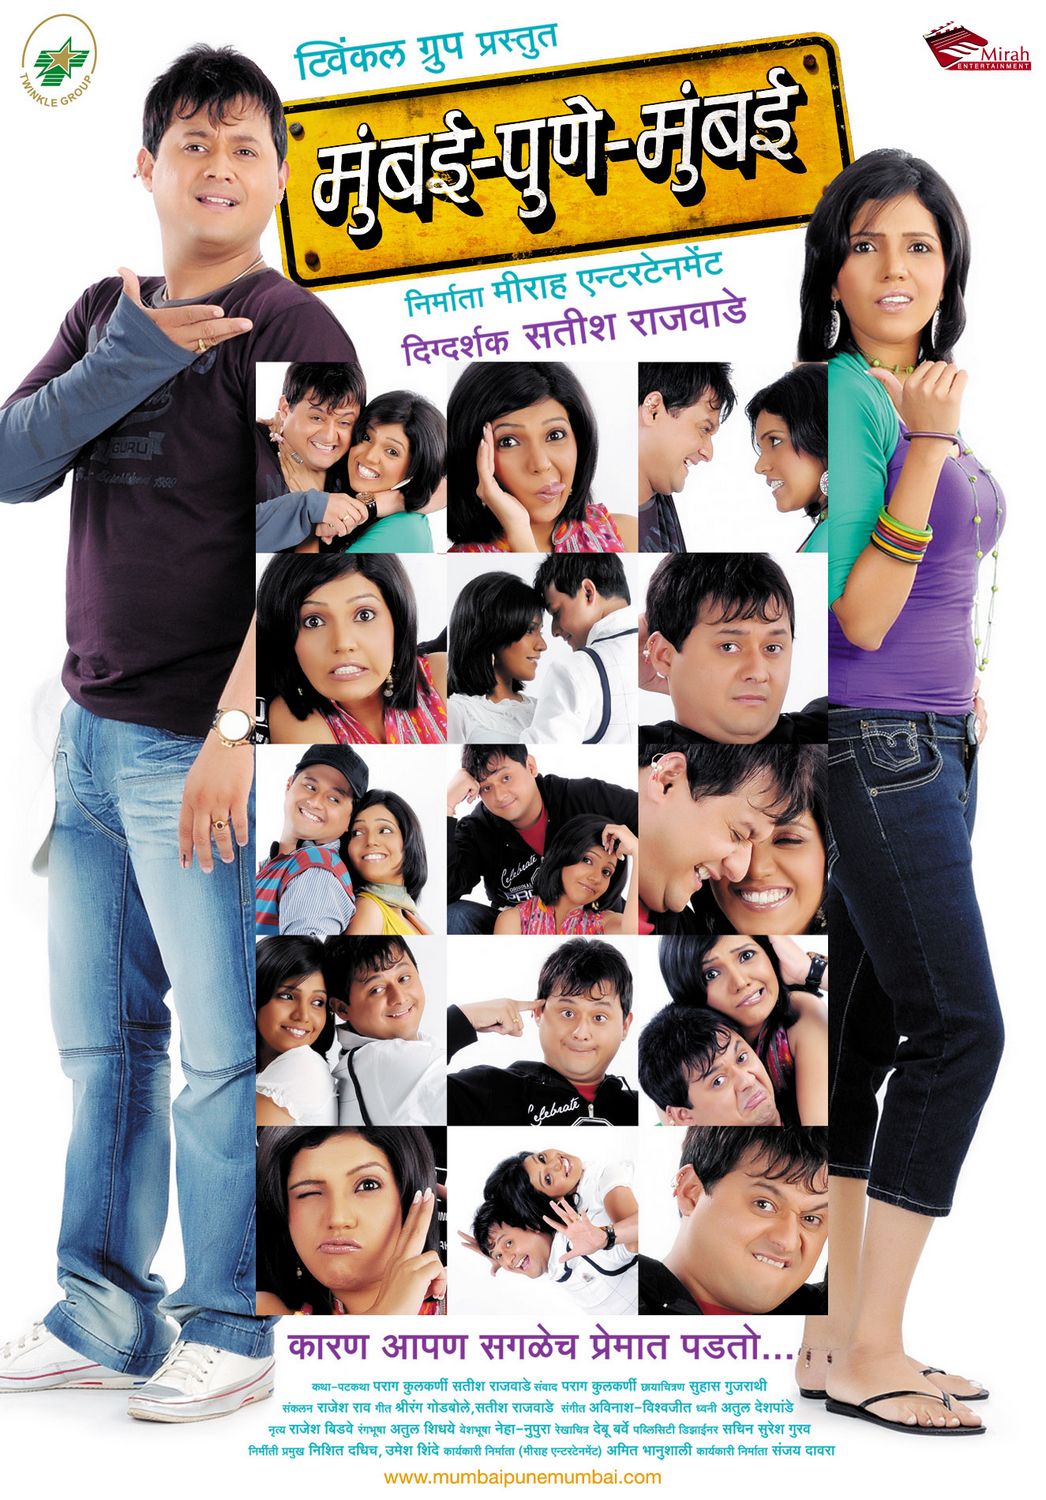 Extra Large Movie Poster Image for Mumbai-Pune-Mumbai (#9 of 12)